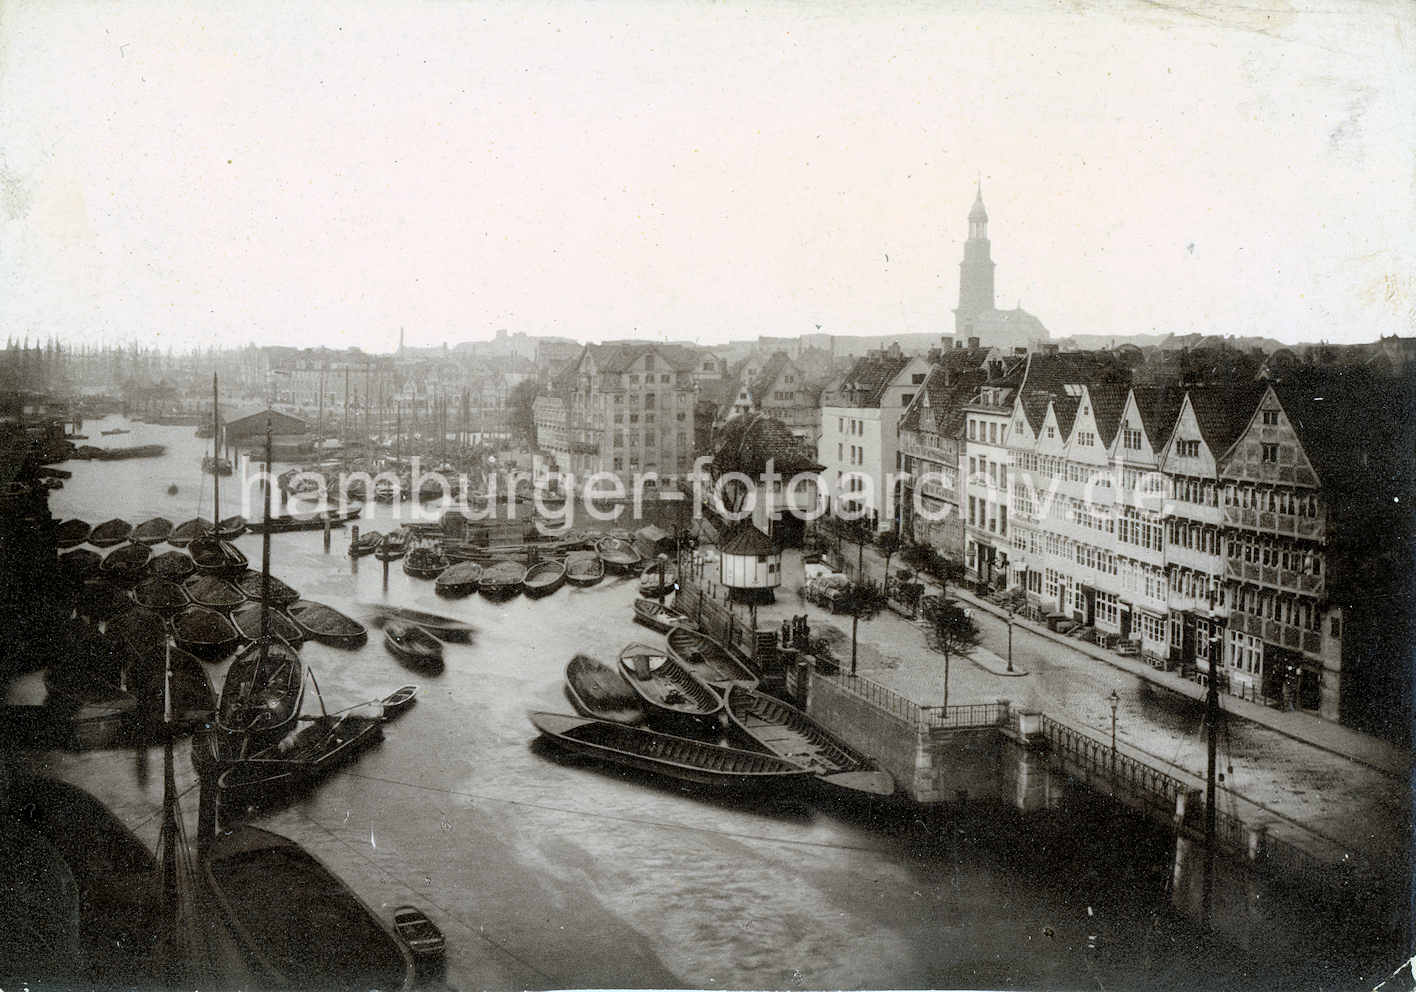 X000127 Historische Fotografie vom Hamburger Binnenhafen. | Binnenhafen - historisches Hafenbecken in der Hamburger Altstadt.